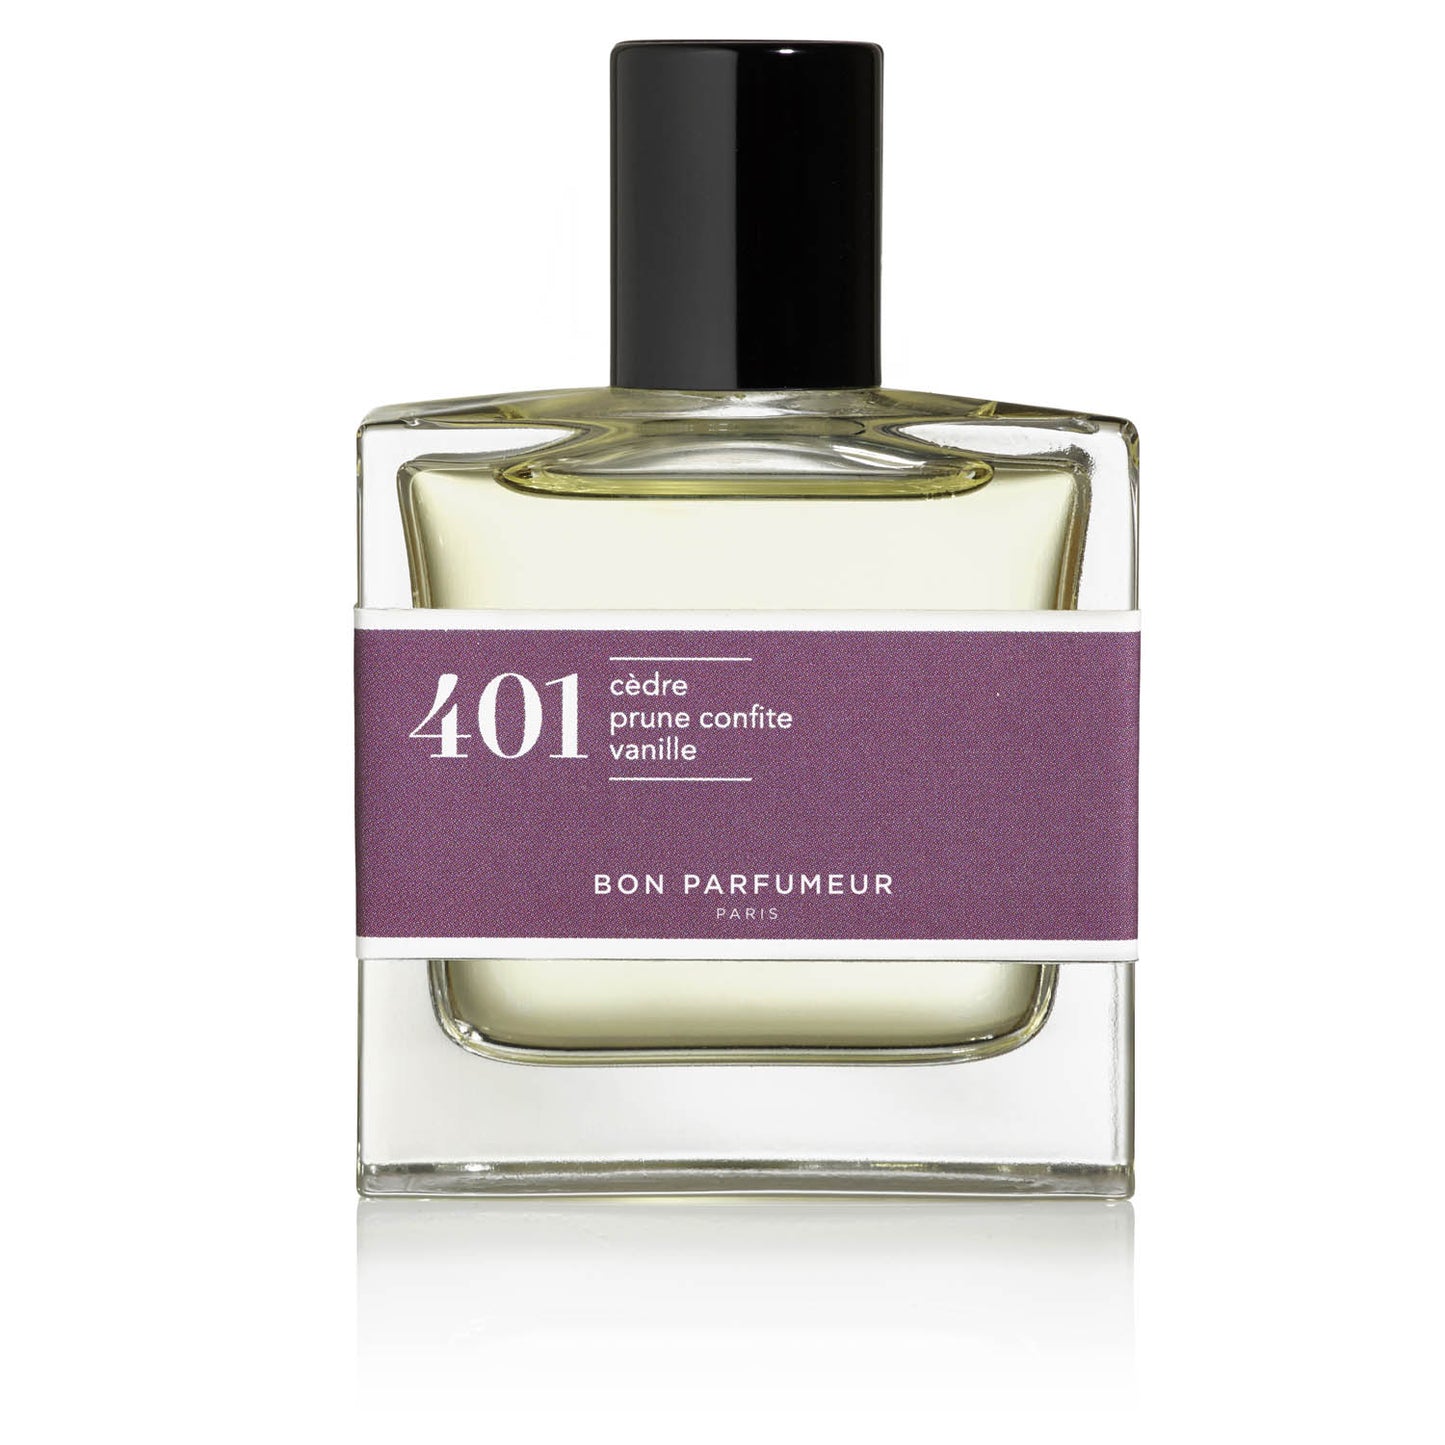 Bon Parfumeur - 401 candied plum vanilla cedar 30 ml